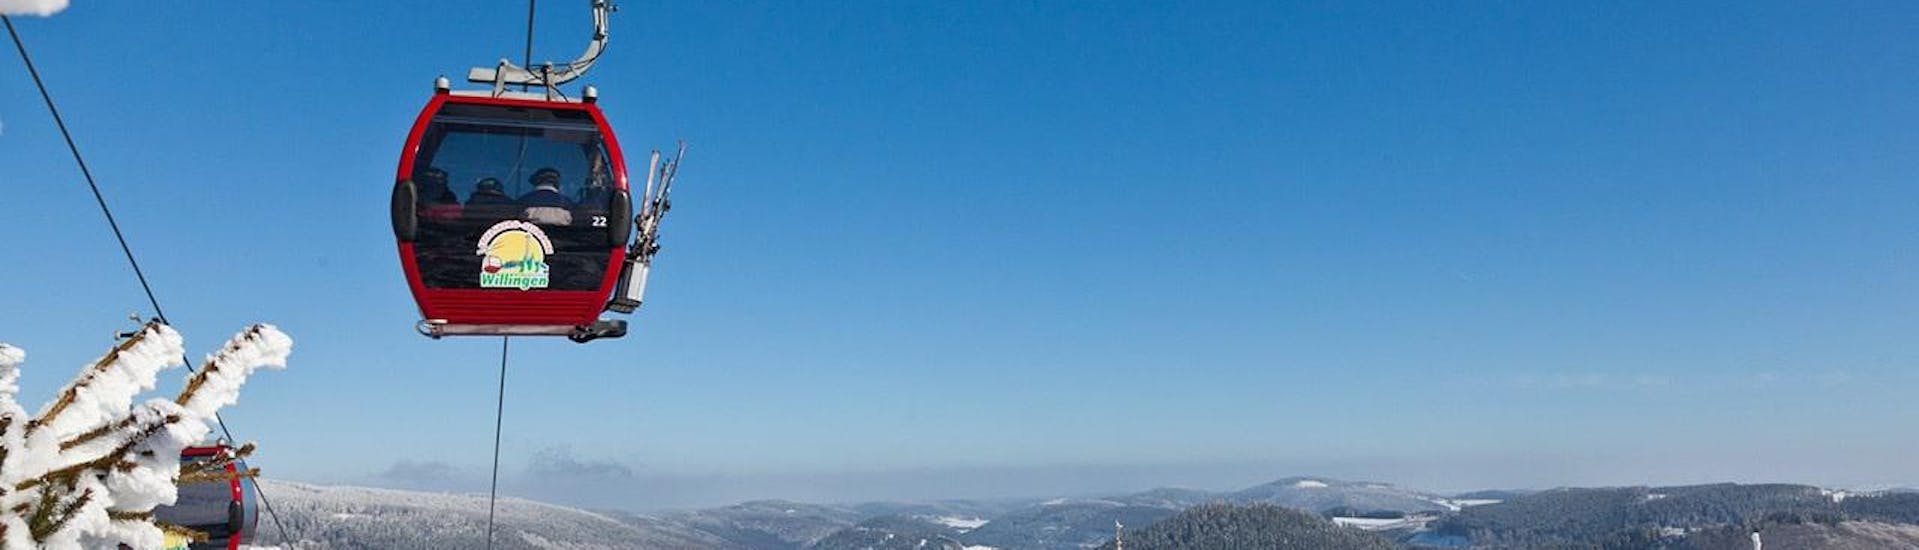 Während eines Skikurses der Skischule Snow & Bike Factory Willingen genießen die Teilnehmer die atemberaubende Aussicht auf das Skigebiet Willingen.